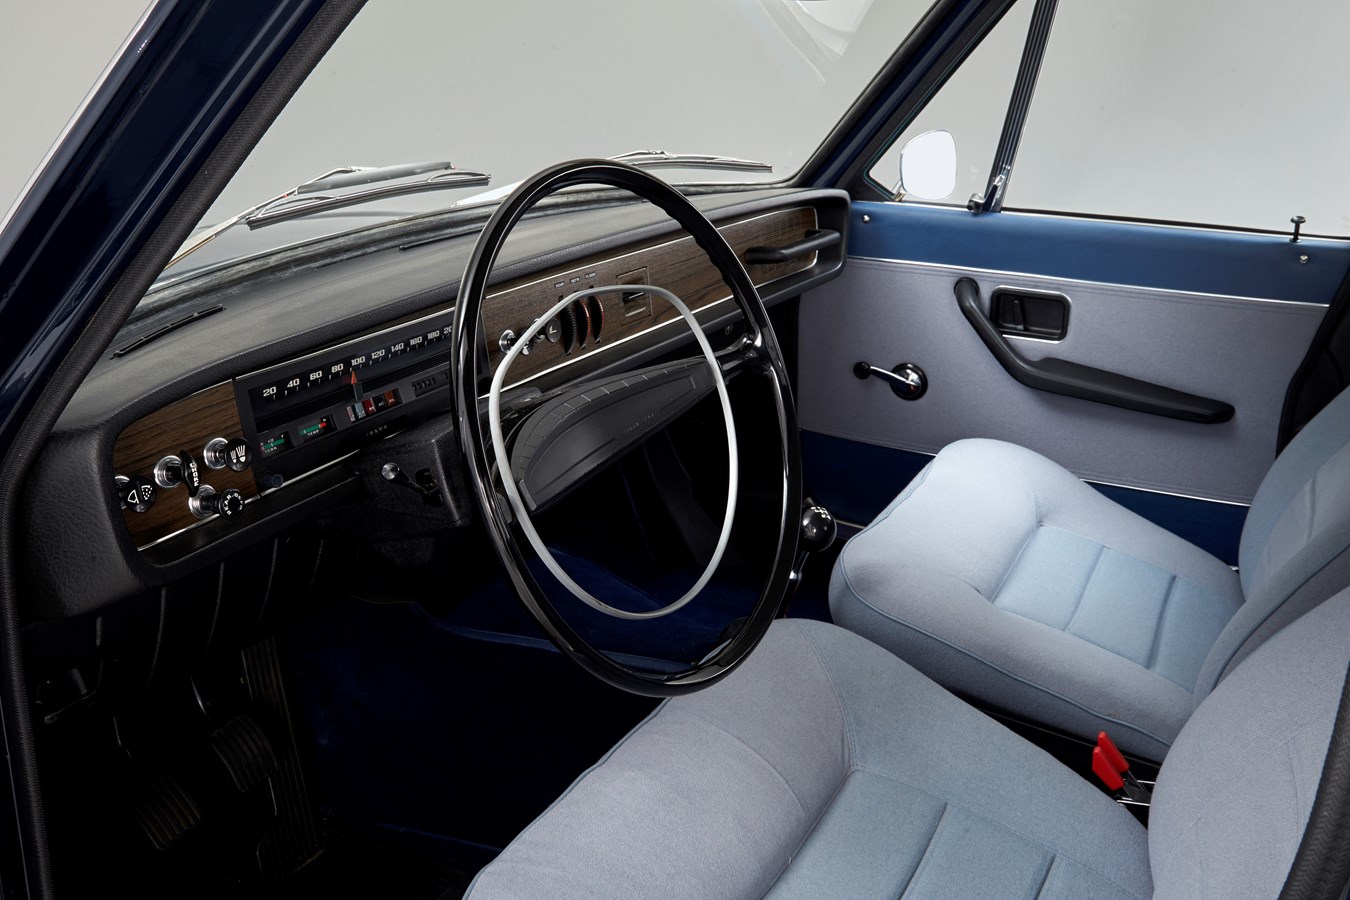 Volvo 164 – 1960s prestige celebrates its 50th anniversary